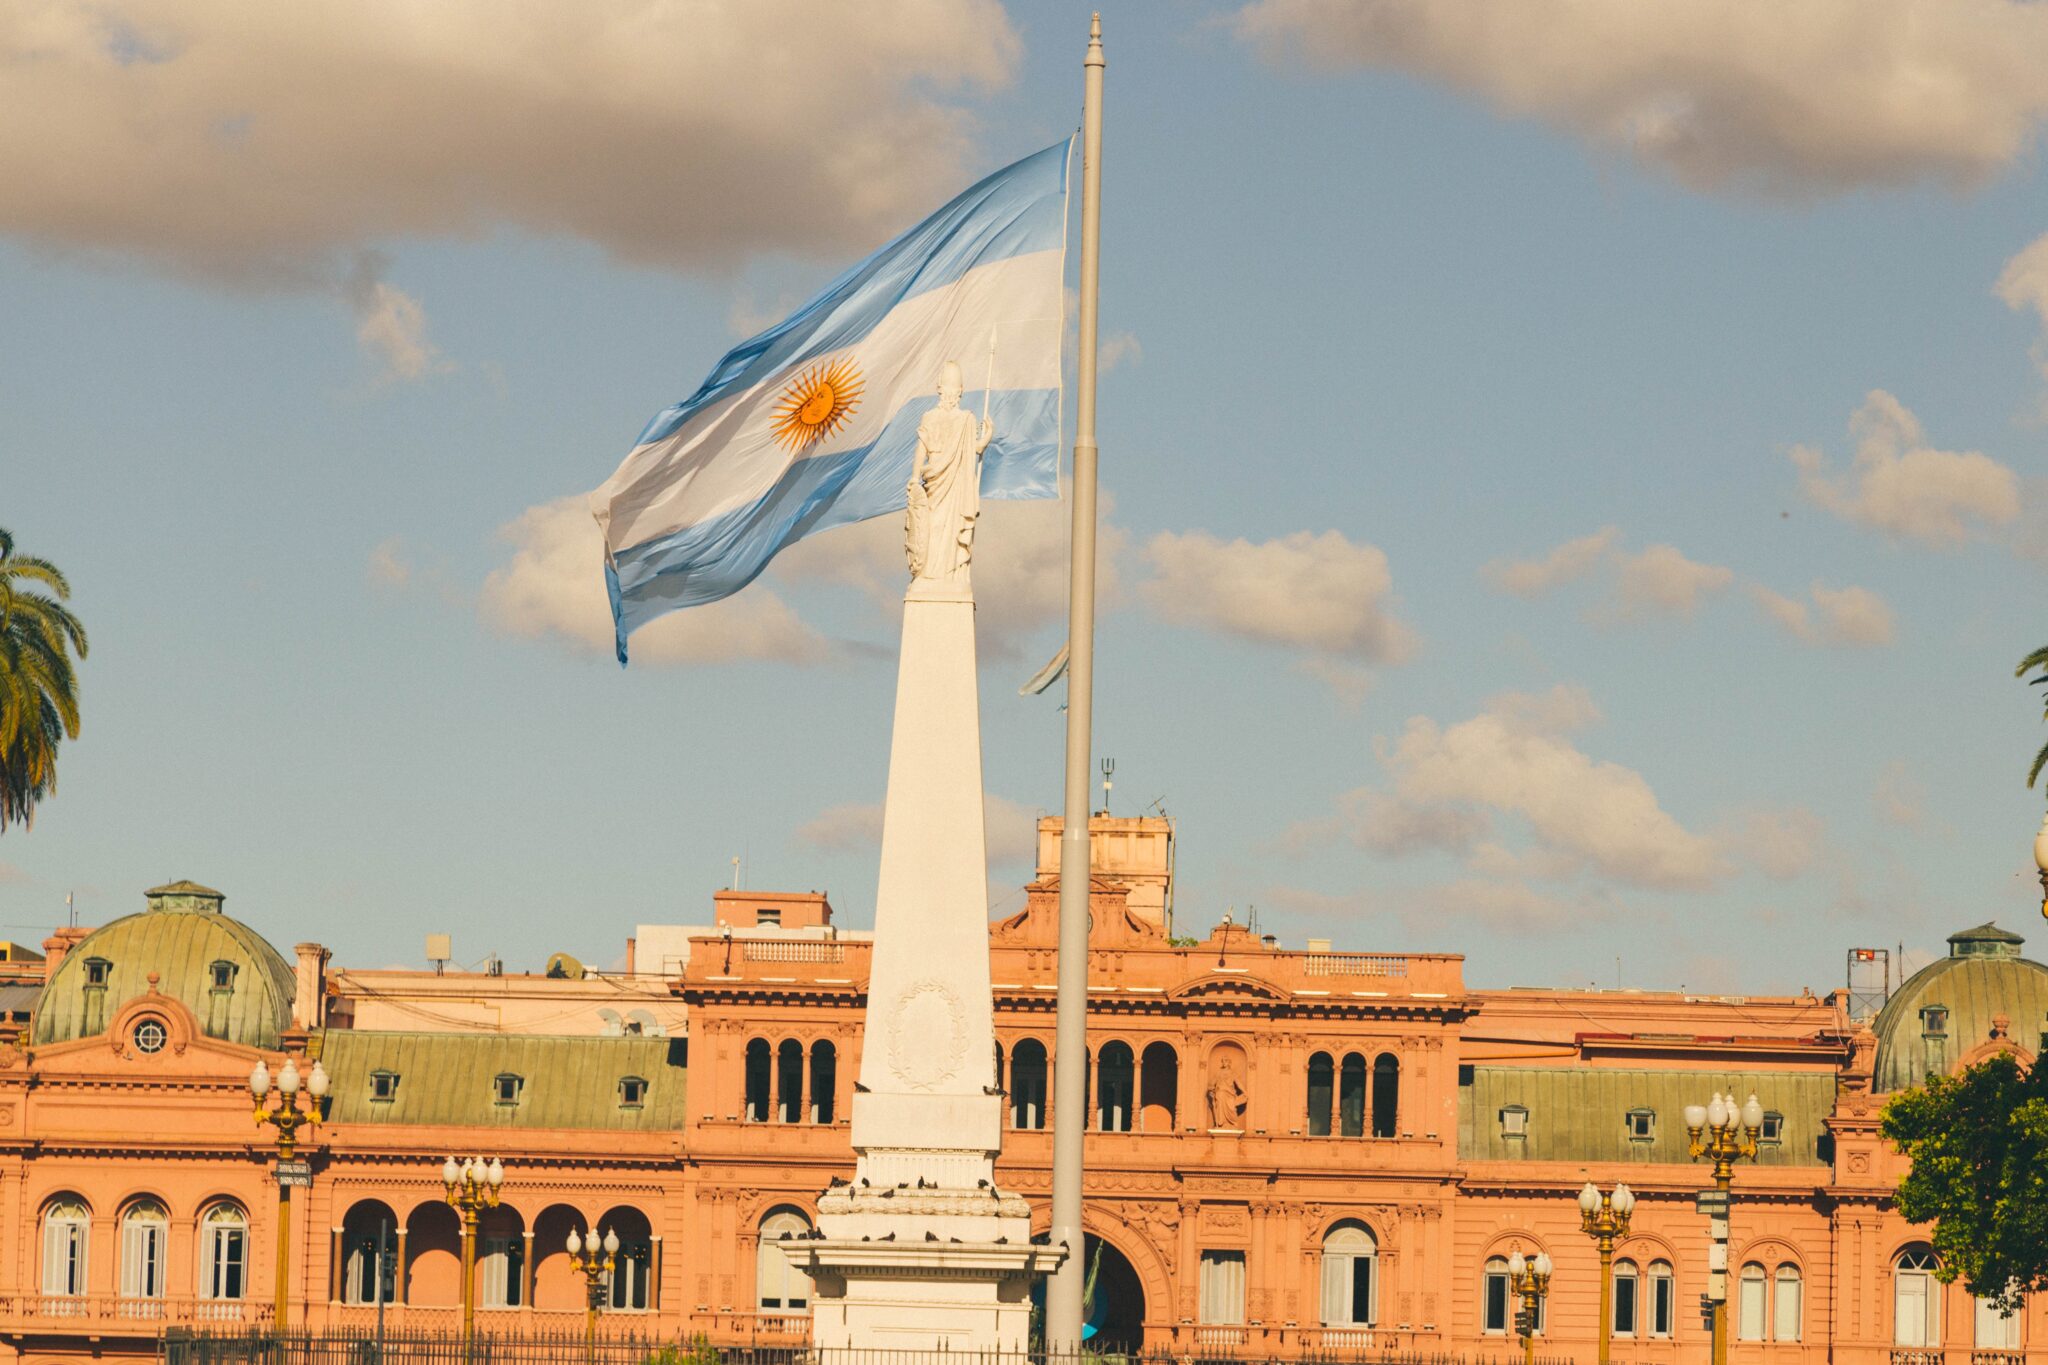 Argentinische Außenpolitik mit Kettensäge? – Eine mögliche Außenpolitik unter Javier Milei